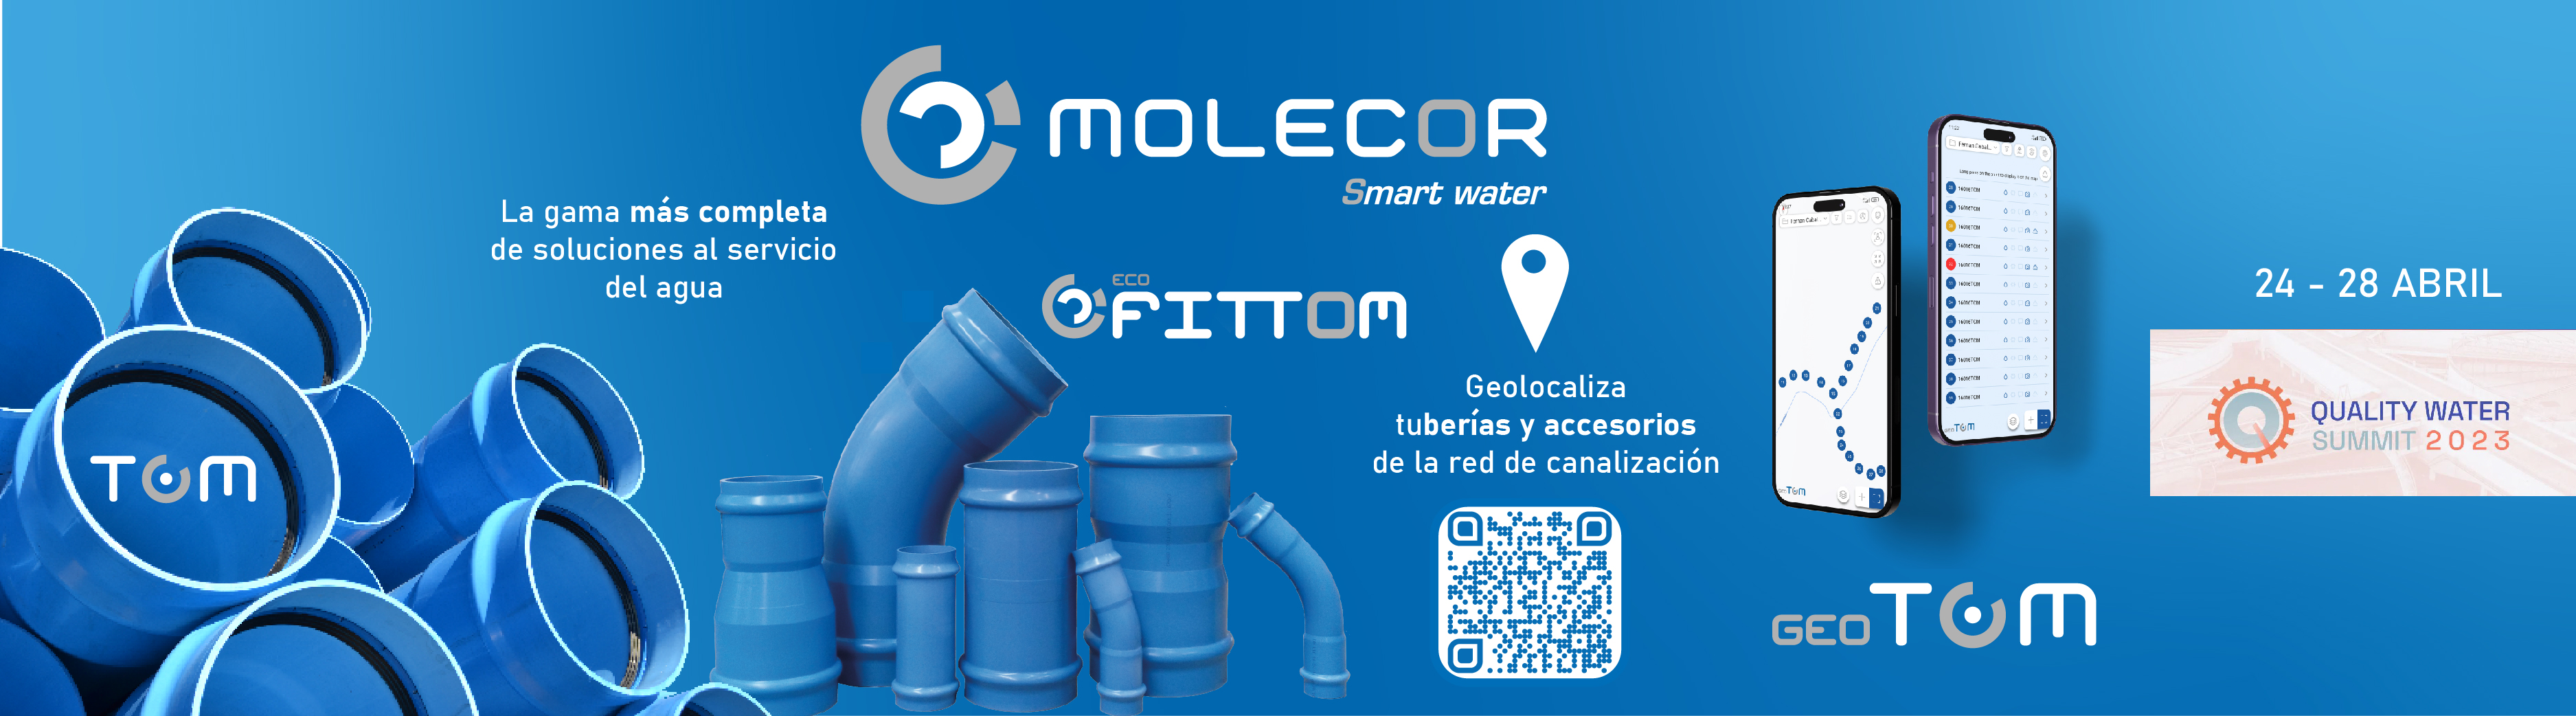 Molecor estará presente con las últimas novedades en el Quality Water Summit de Madrid